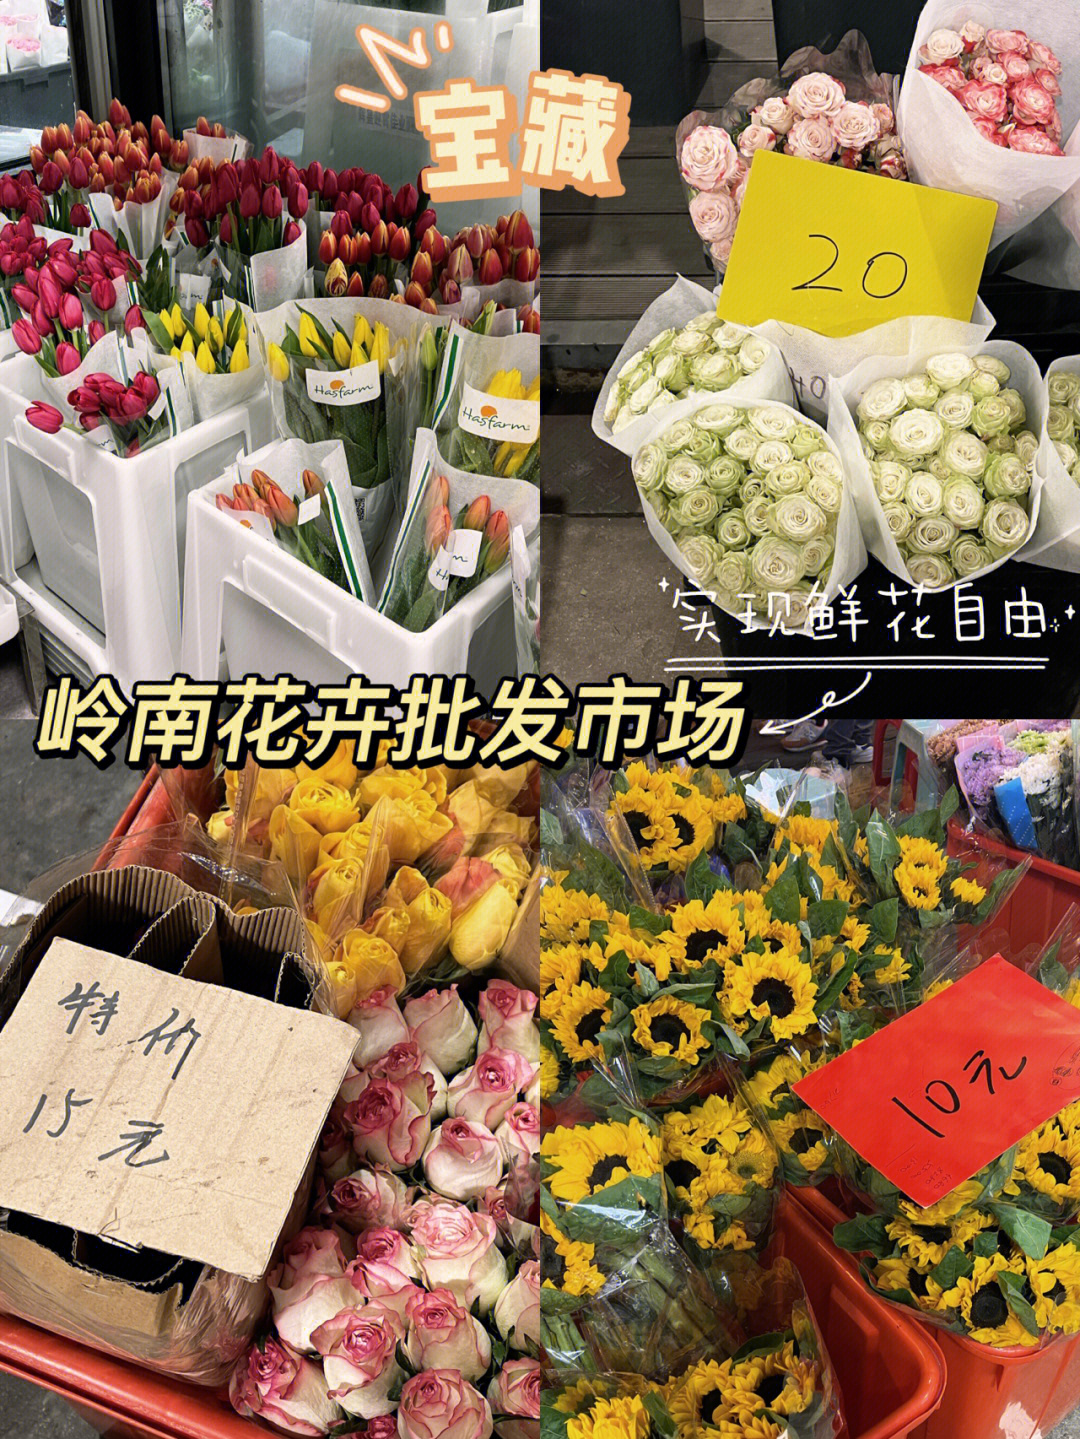 超宝藏77广州岭南花卉批发市场超平价60